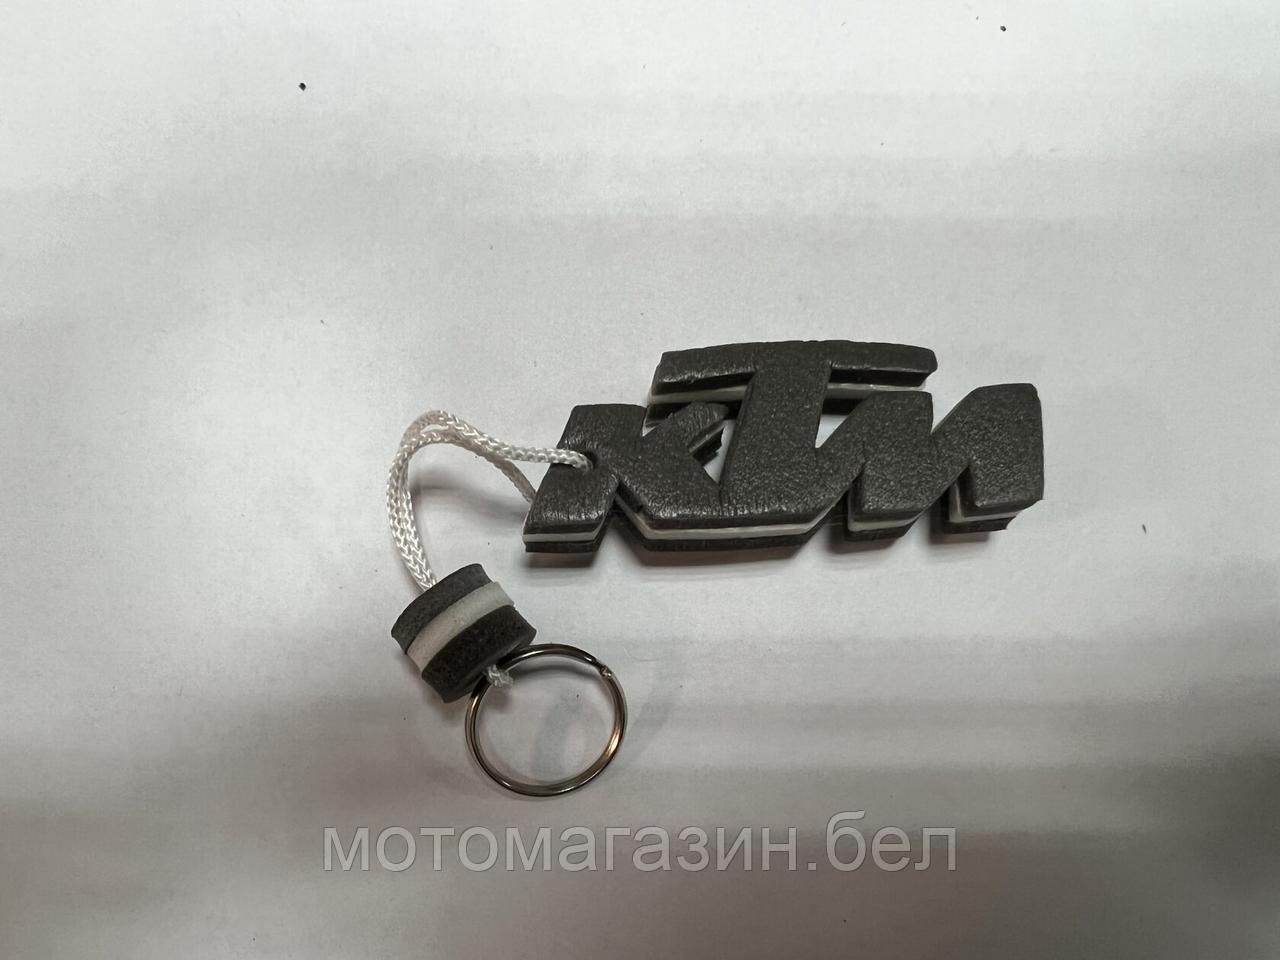 Брелок KTM "SALO" (каучук, белый)